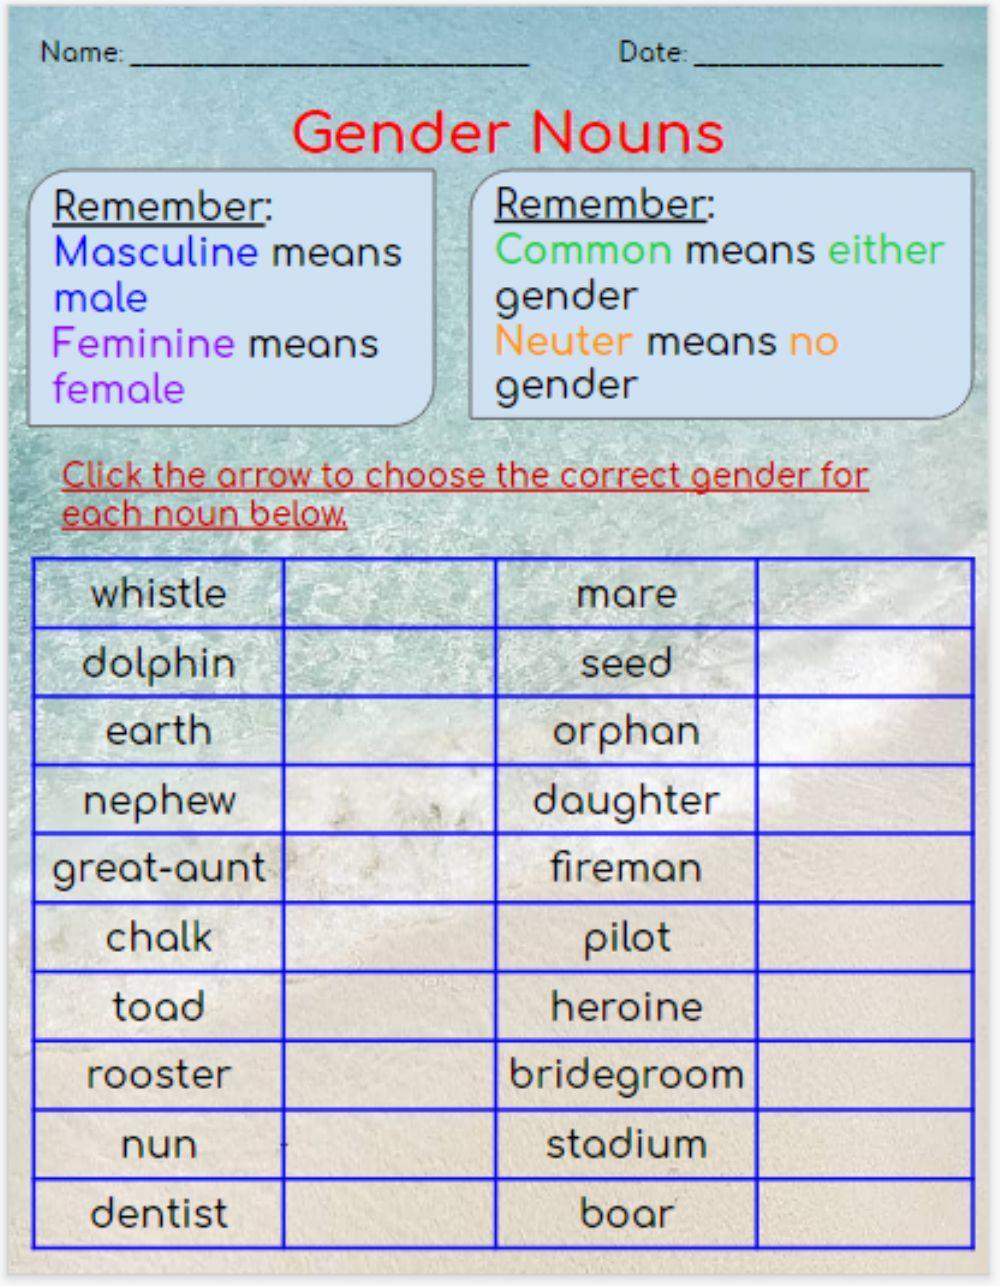 Gender Nouns Sort Worksheet Live Worksheets